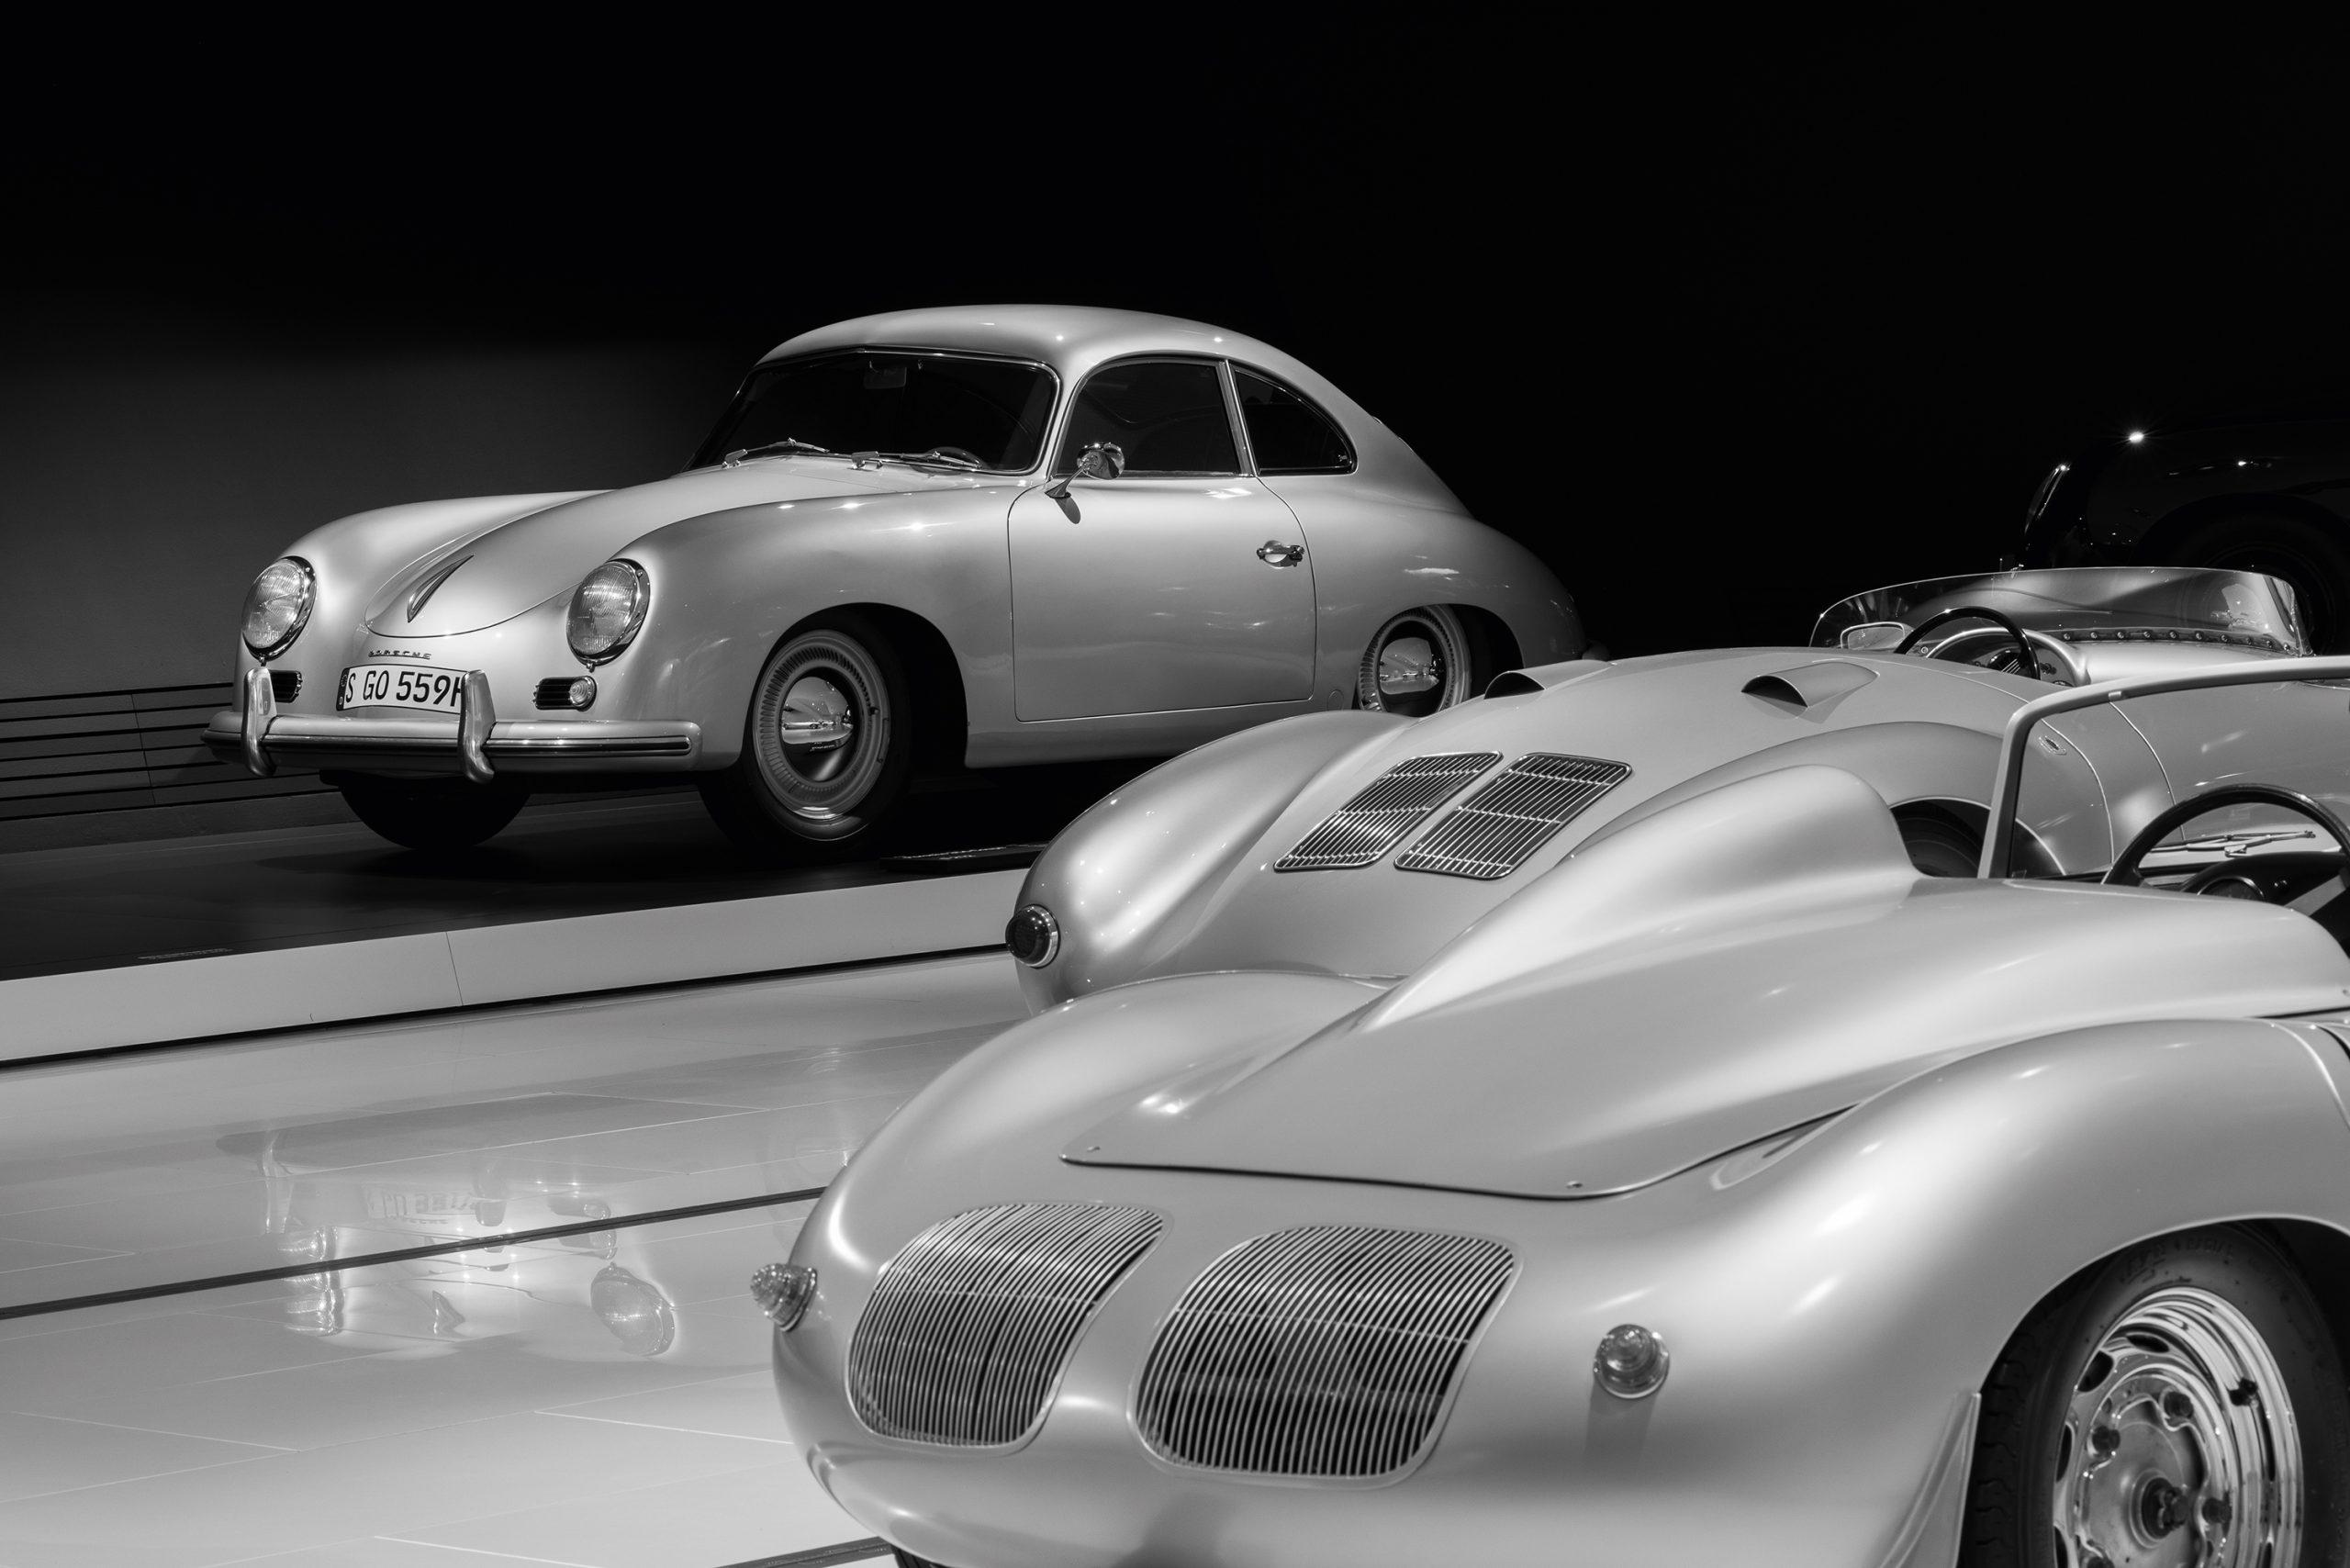 Klassiker: Im Porsche-Museum lassen sich auch echte Automobilikonen ablichten. Hier festgehalten von Workshop-Teilnehmer Niehls Schramm. Bild: Niehls Schramm